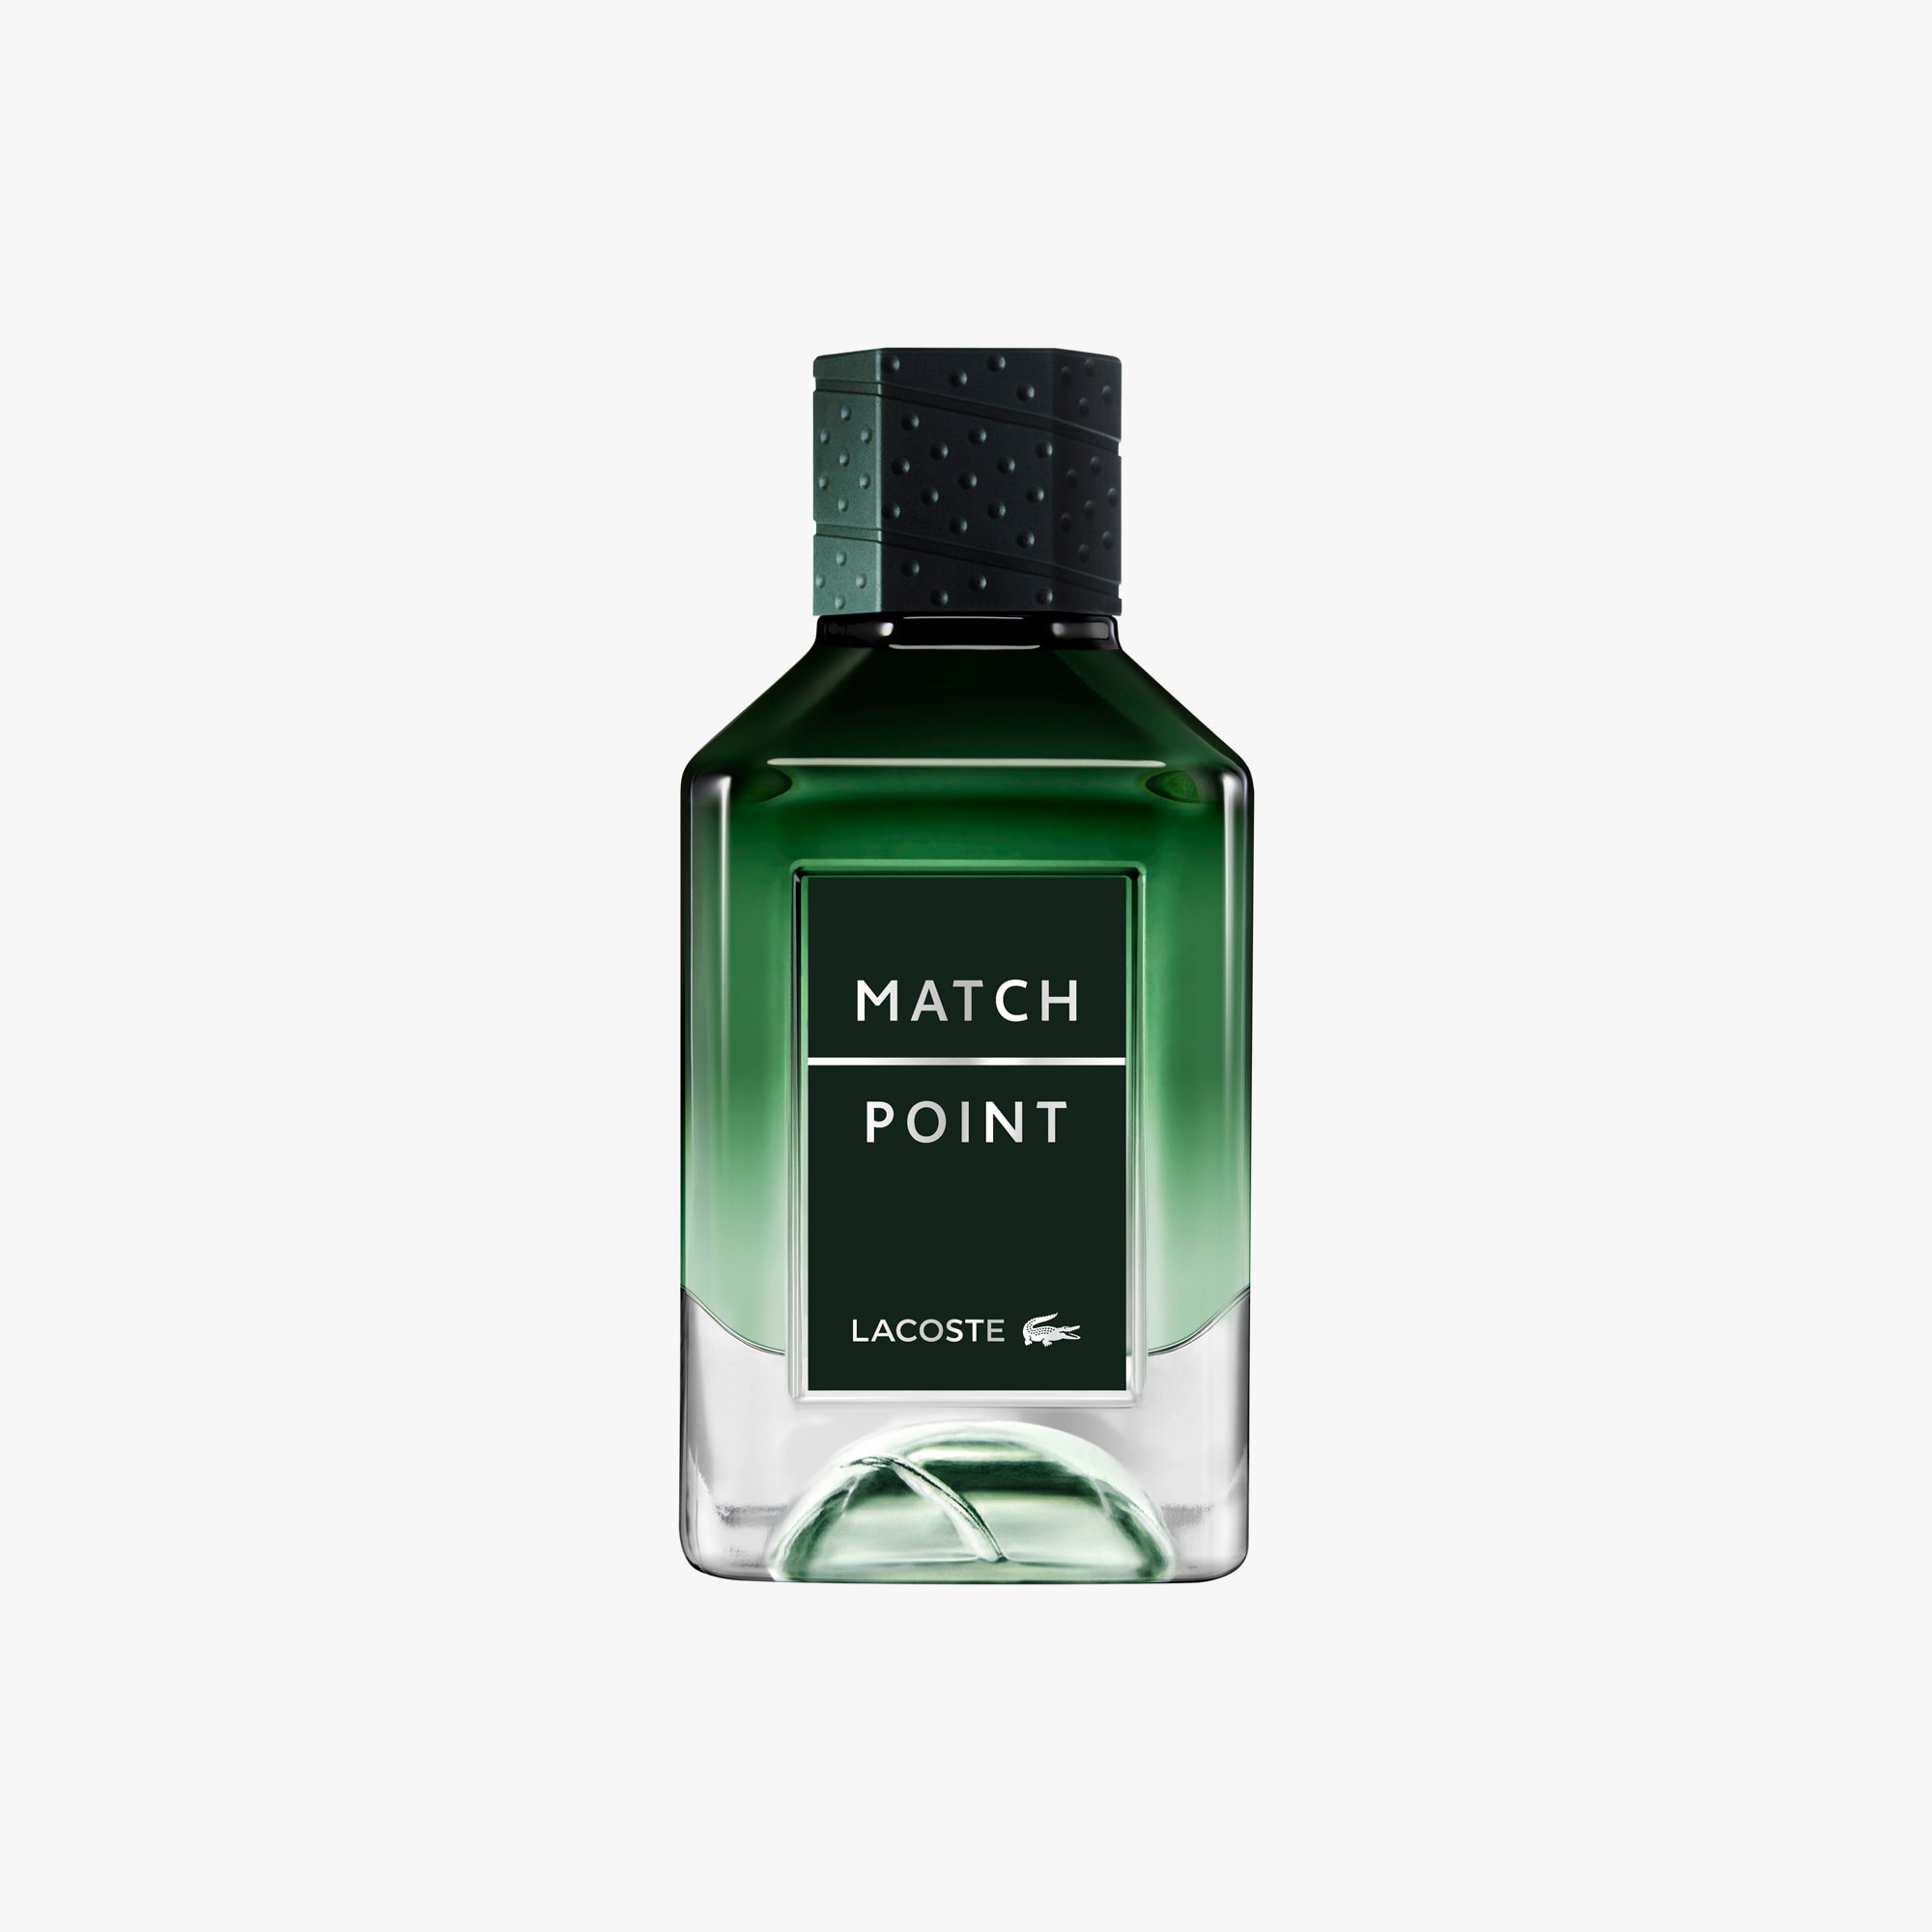 Lacoste Match Point Eau De Parfum 100ml Size One size Green